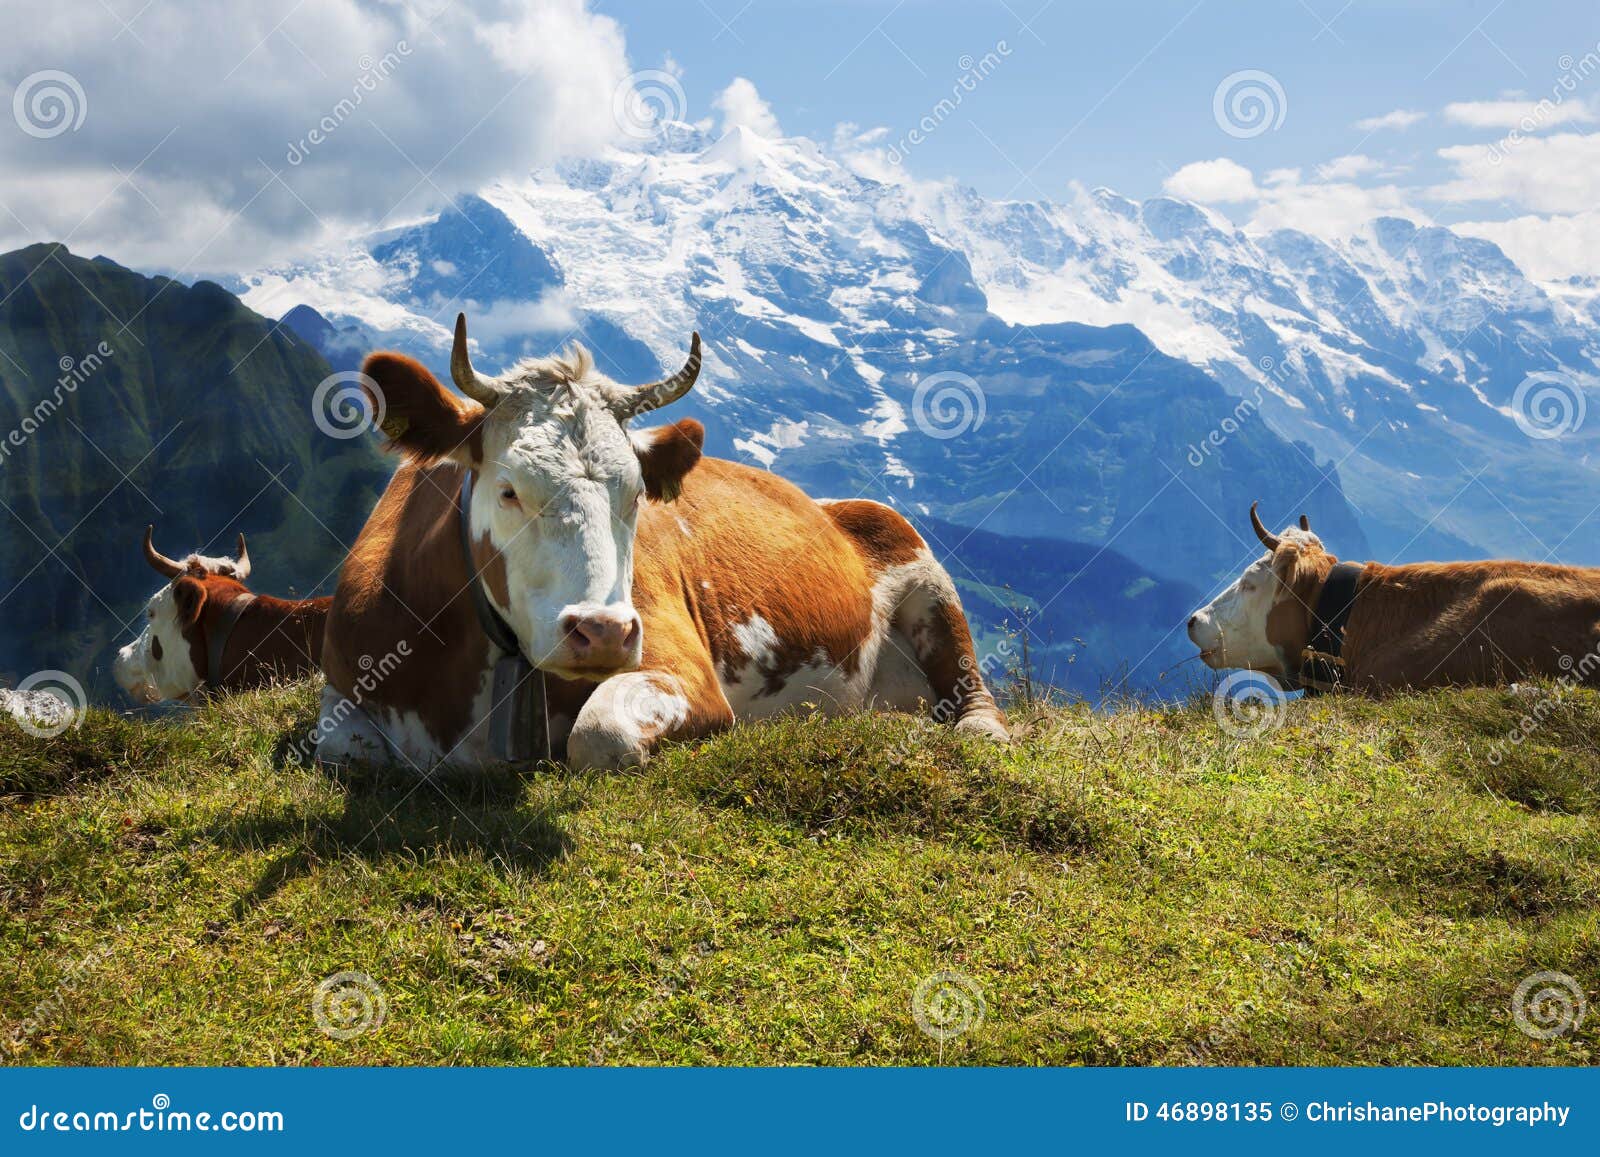 swiss cows at rest on schynige platte, switzerland